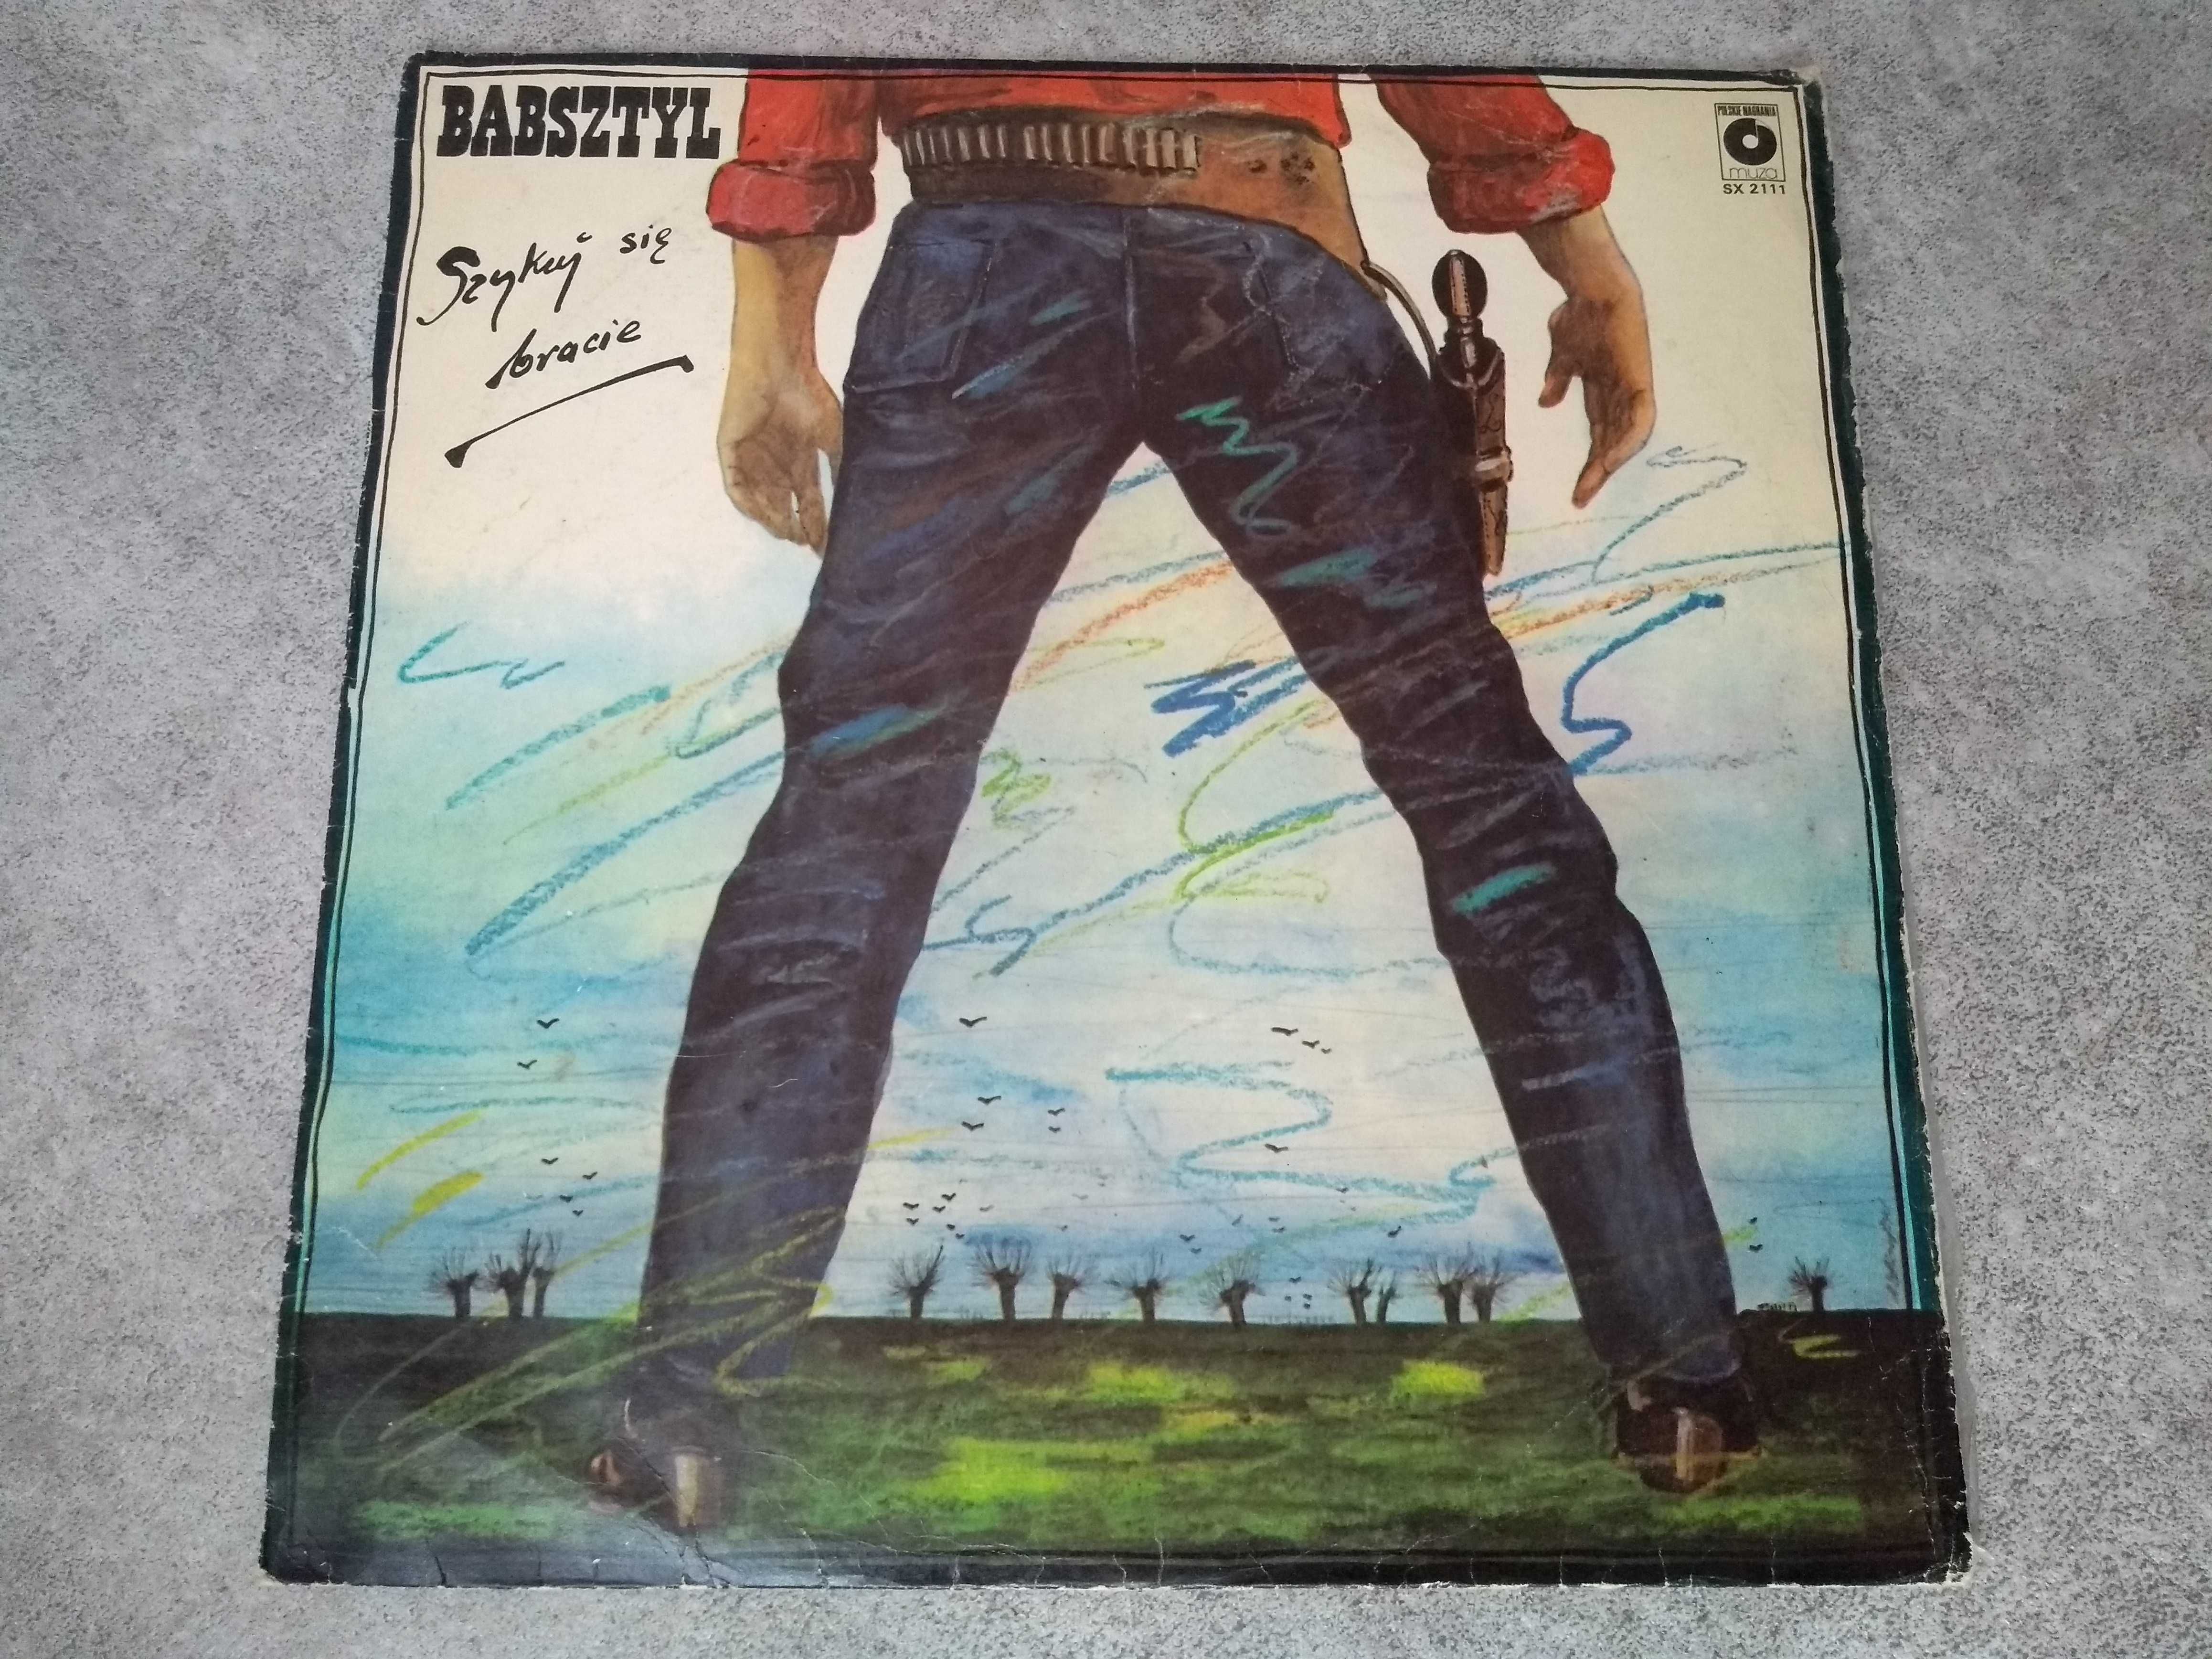 Babsztyl - Szykuj się bracie - LP - płyta gramofonowa, winyl - 1982